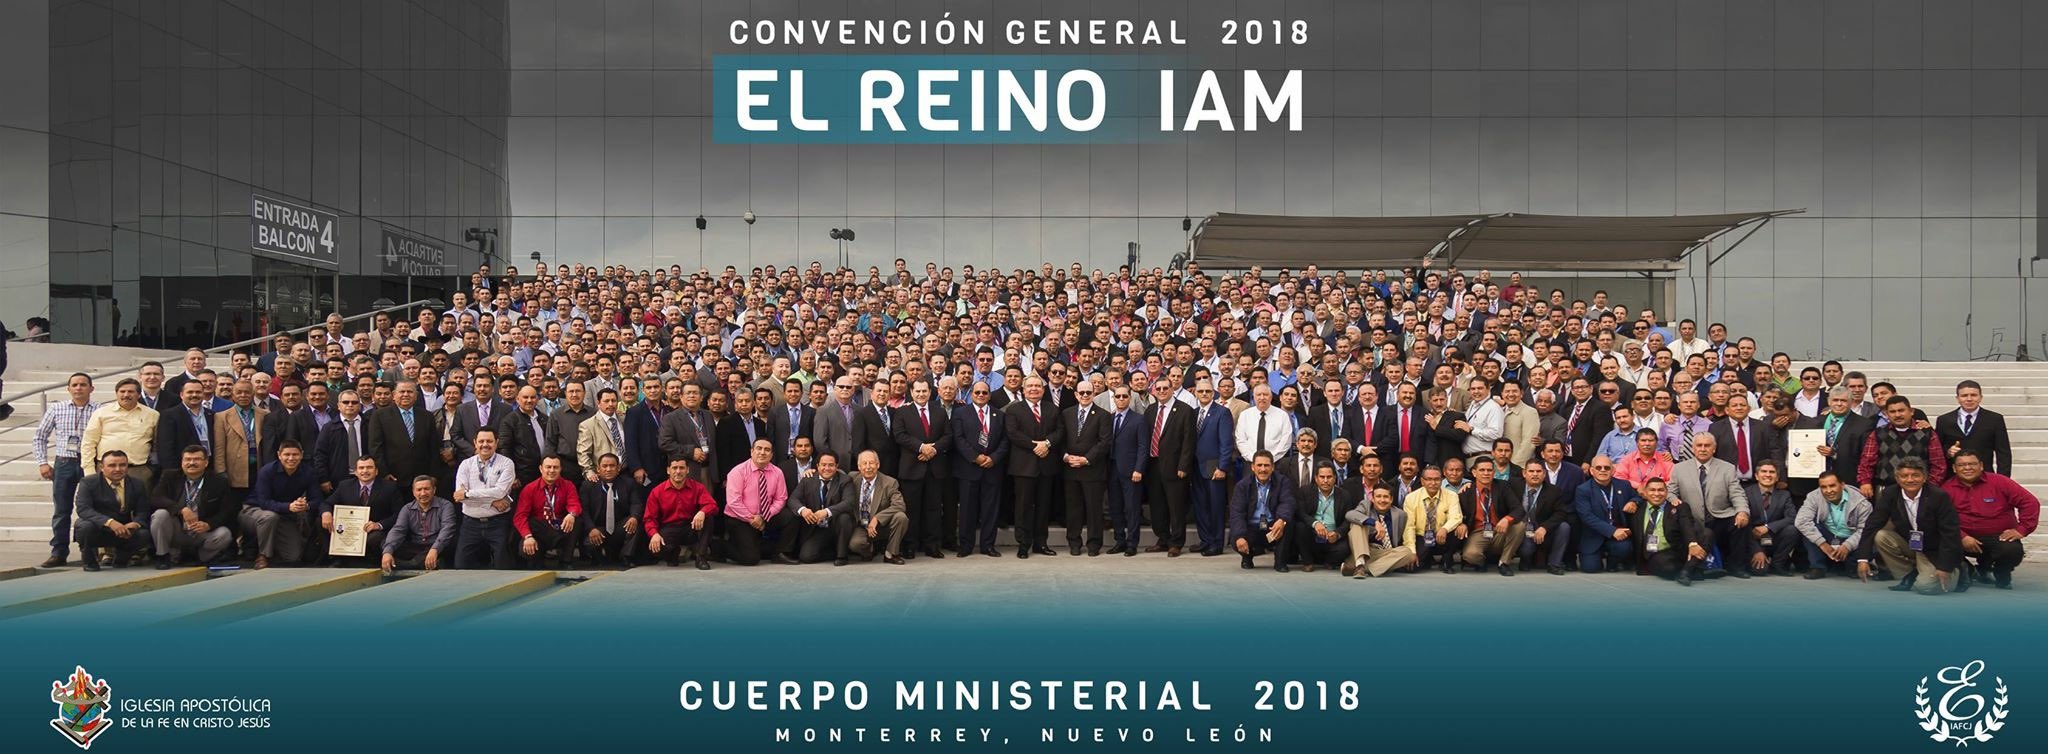 Foto tomada durante la Convención General 2018 en Monterrey, Nuevo León.